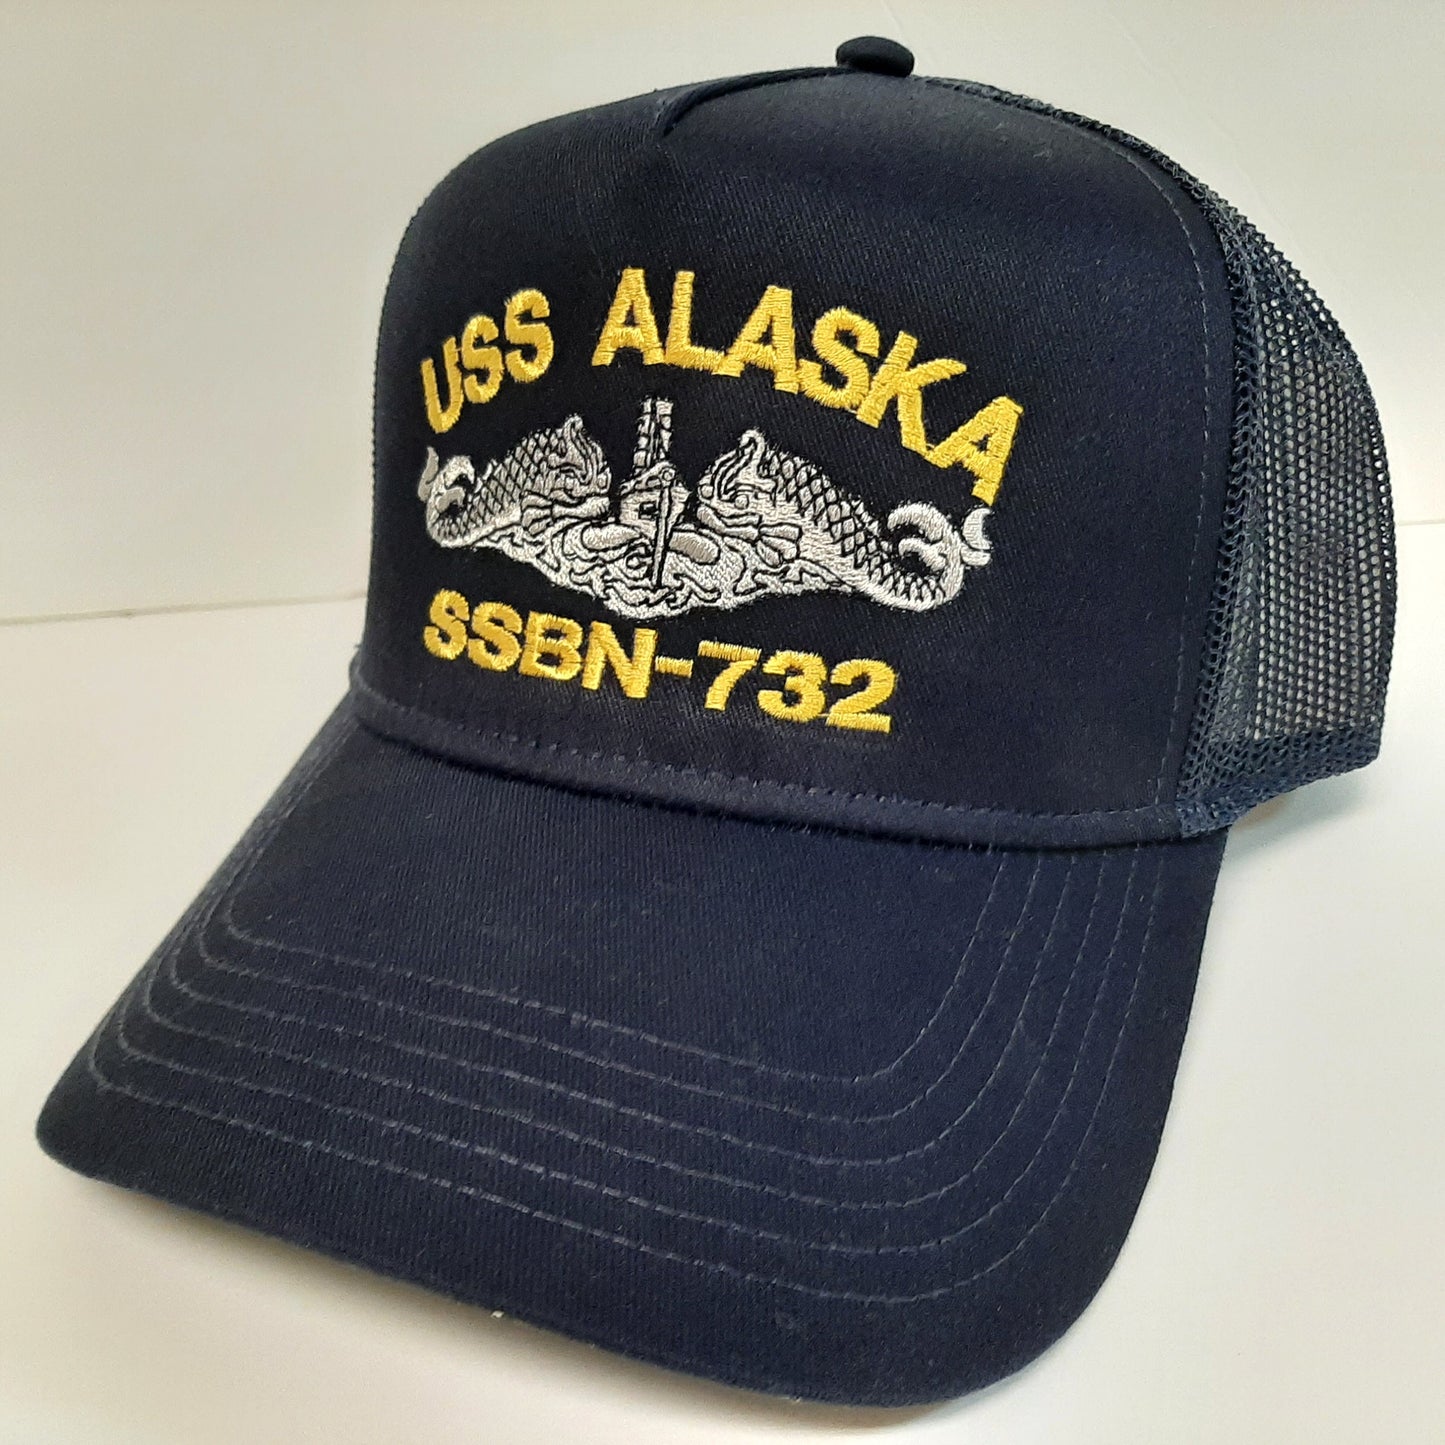 USS Alaska SSBN-732 Boat Baseball Cap Hat Mesh Snapback Blue Embroidered US Navy